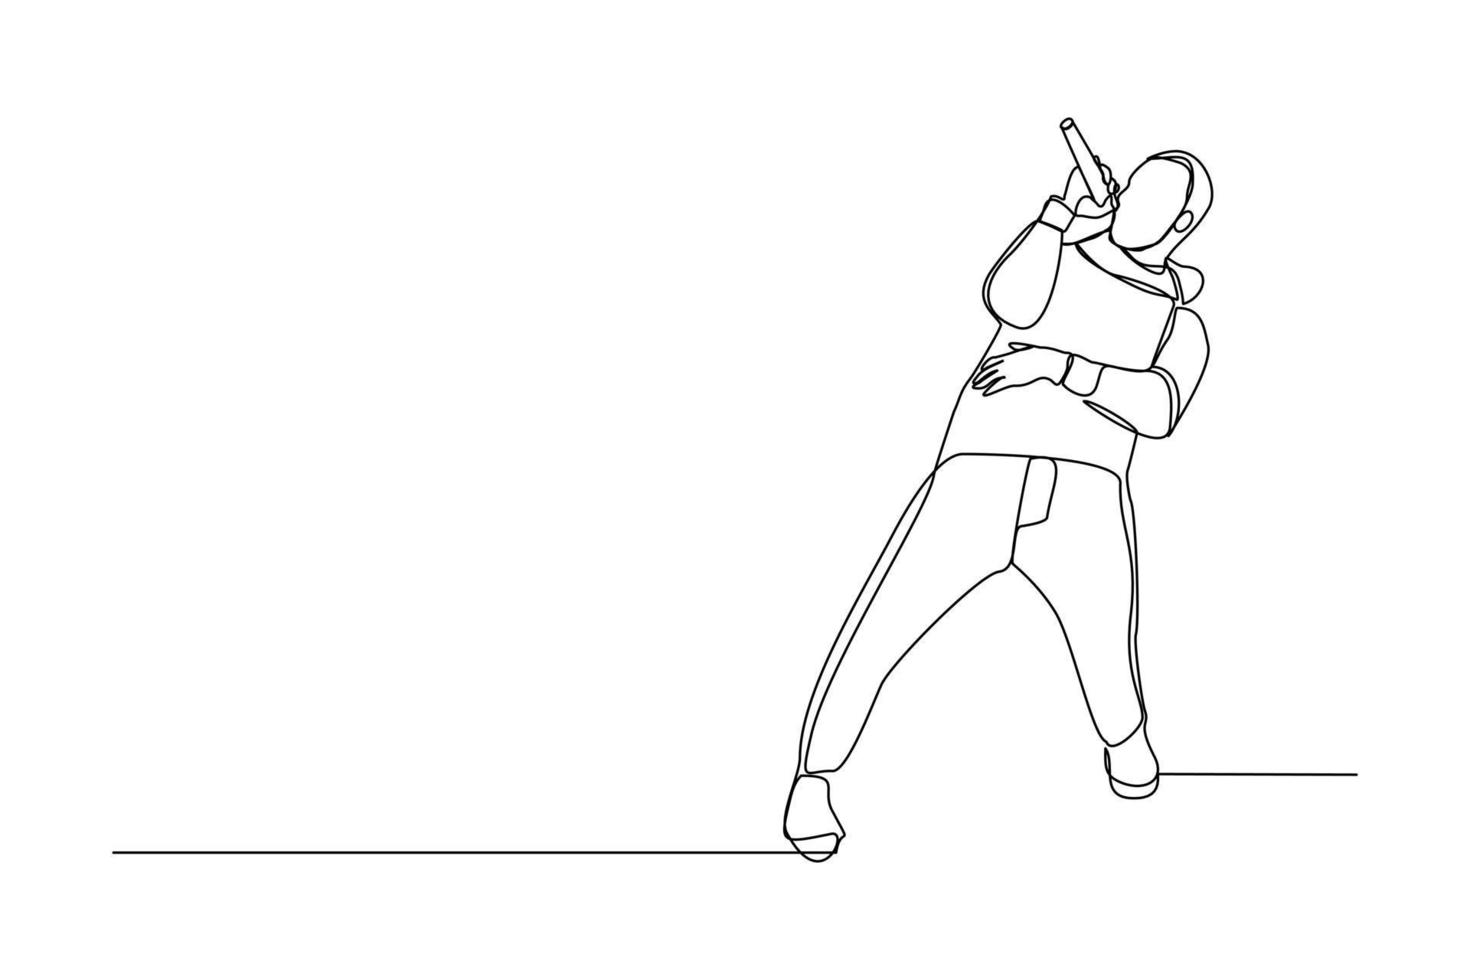 desenho de linha contínua do jovem cantor pop masculino feliz segurando o microfone cantando e pulando no palco. arte de uma linha única de ilustração em vetor de design de conceito de performance de artista de músico